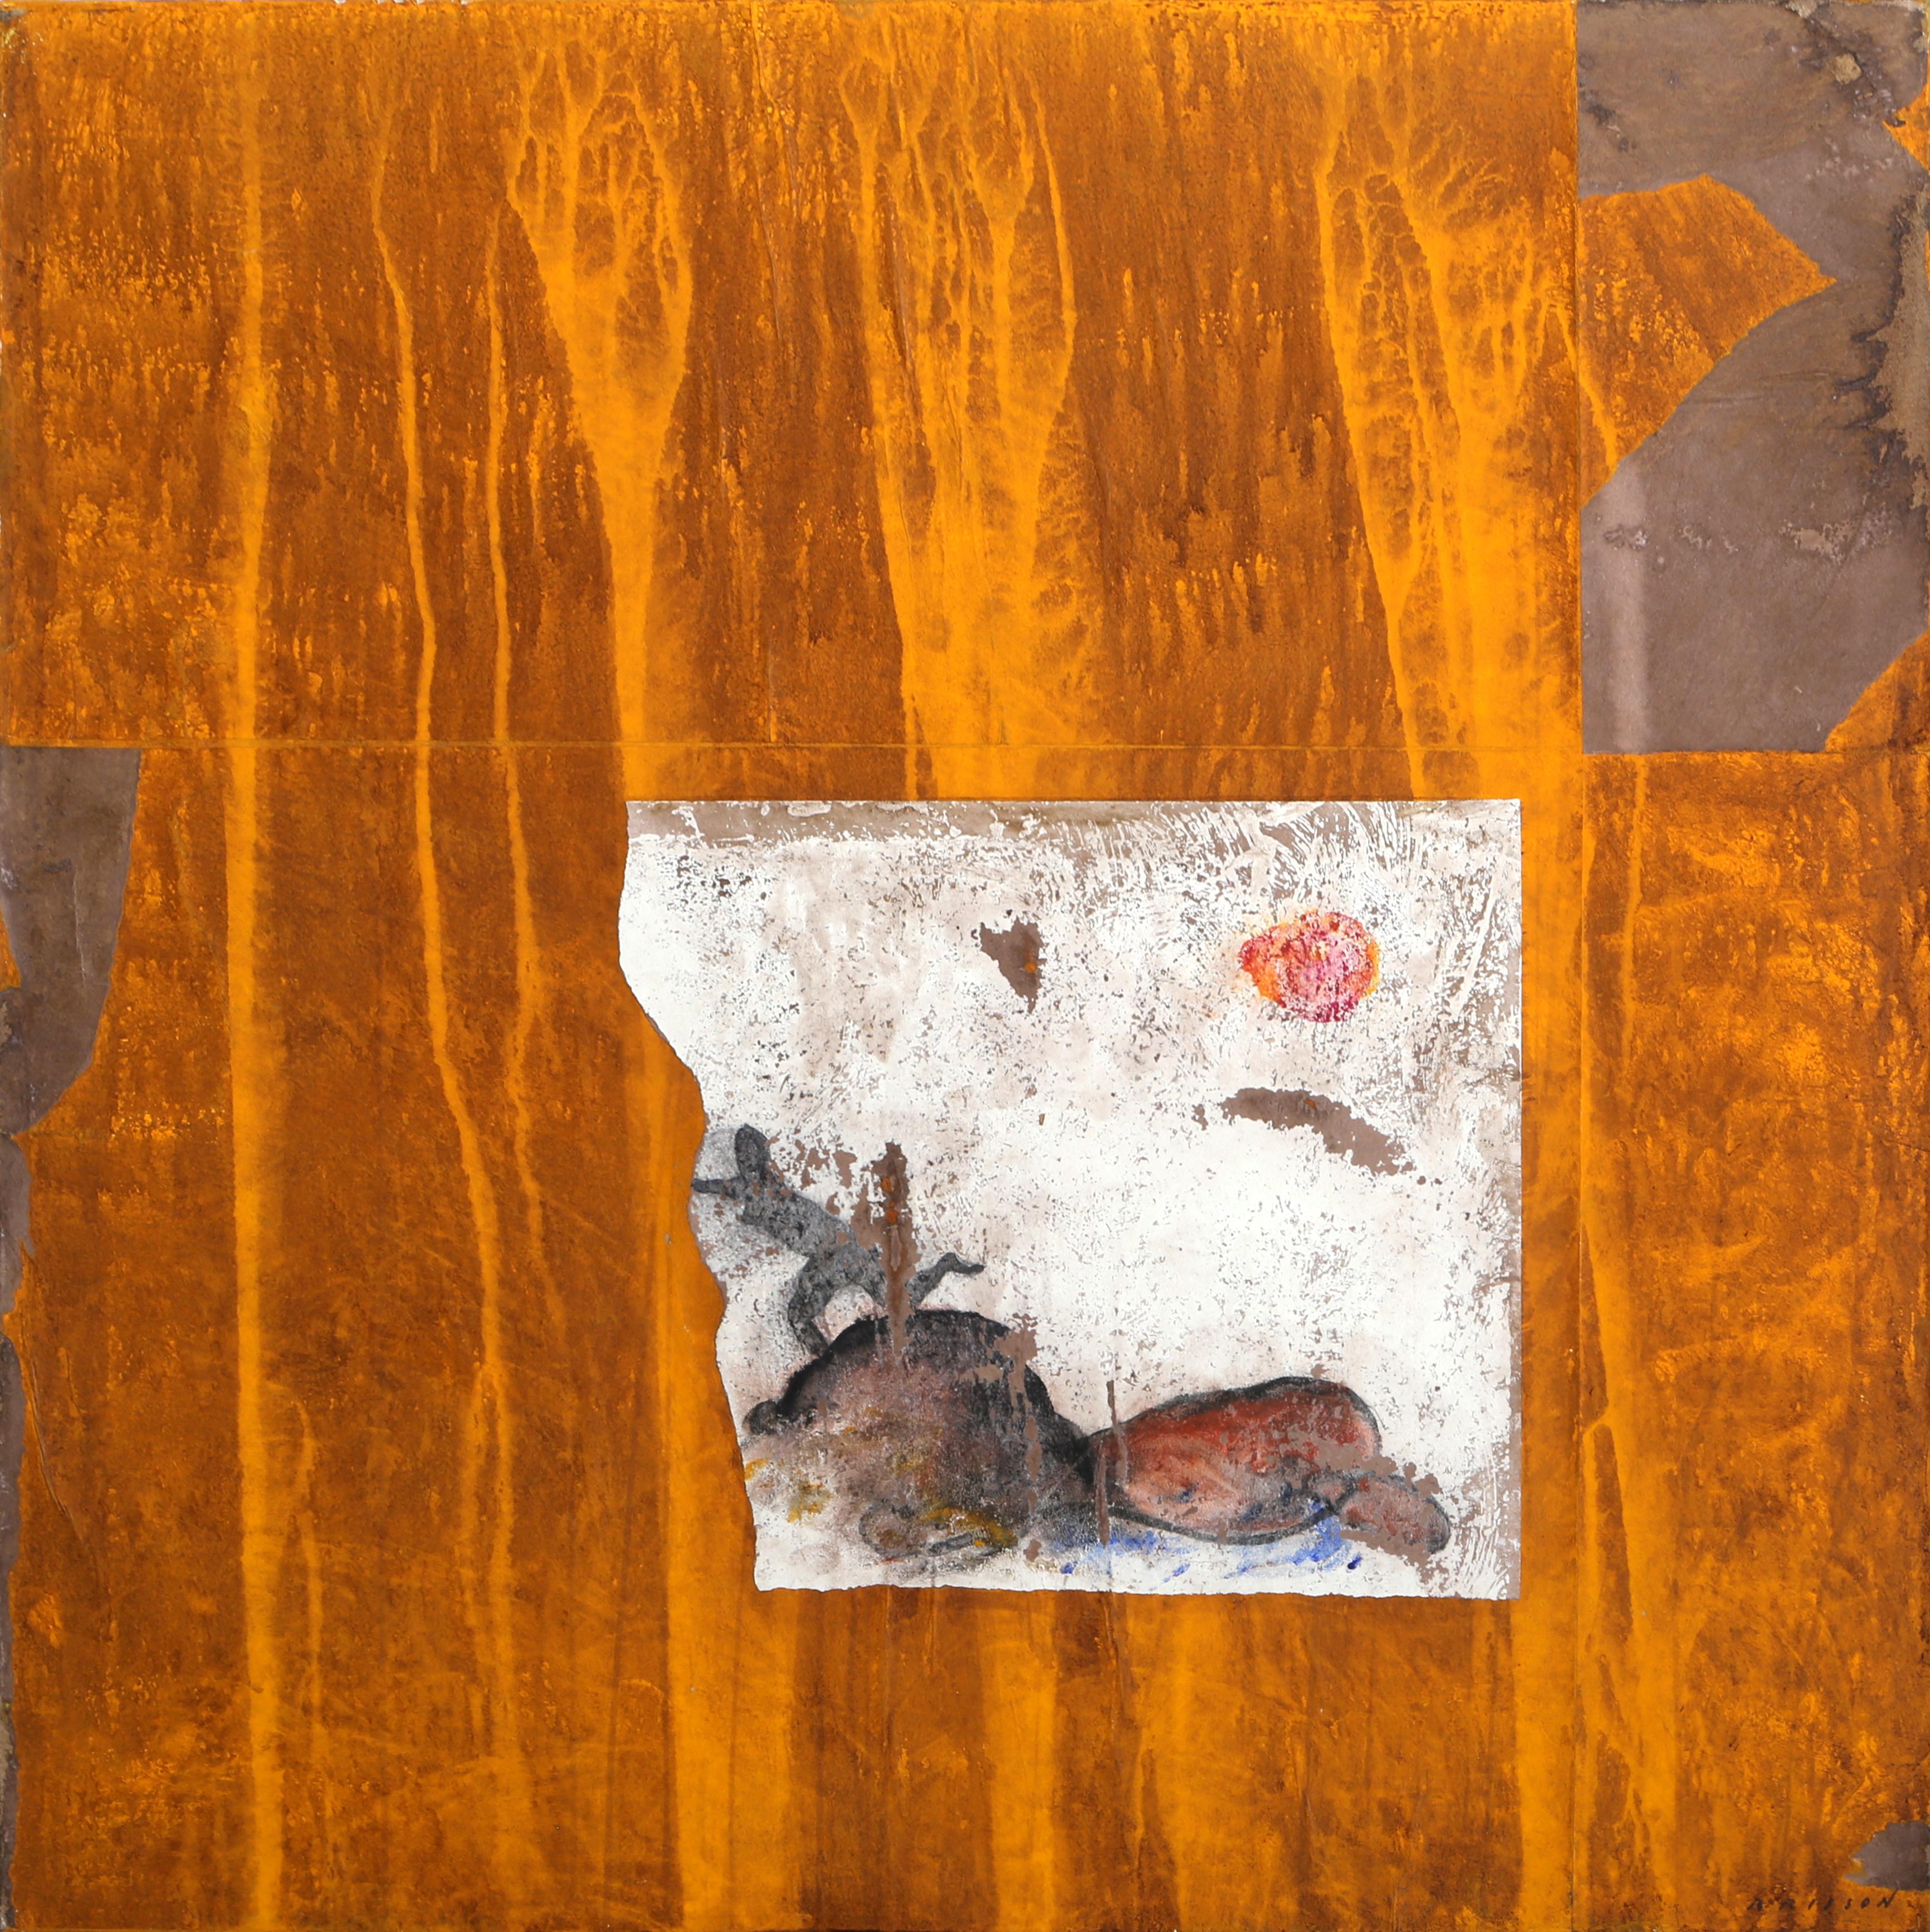 La Sortie 2
Pierre Marie Brisson, Français (1955)
Date : 2001
Huile sur toile, signée en bas à droite et datée au verso
Taille : 31 x 31 in. (78.74 x 78.74 cm)

Provenance : Galerie Franklin Bowles (a) Gallery, NYC